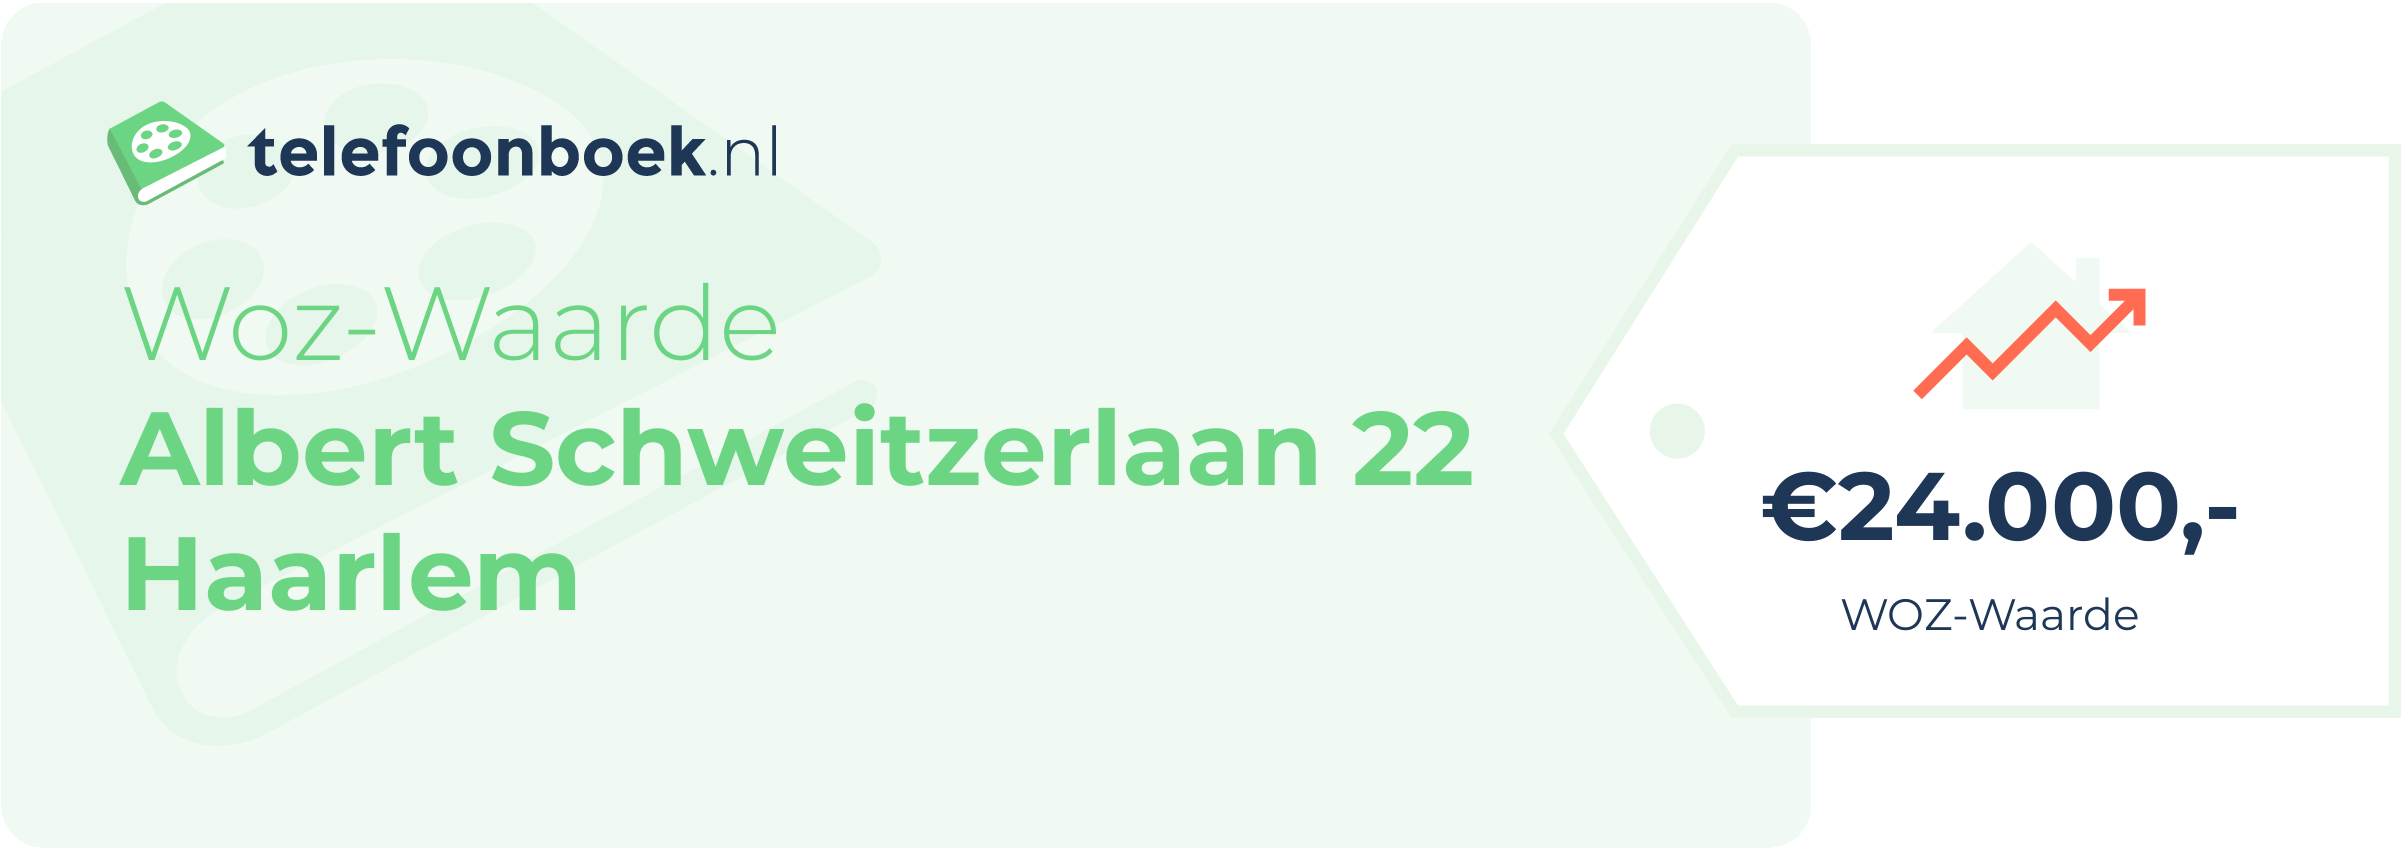 WOZ-waarde Albert Schweitzerlaan 22 Haarlem